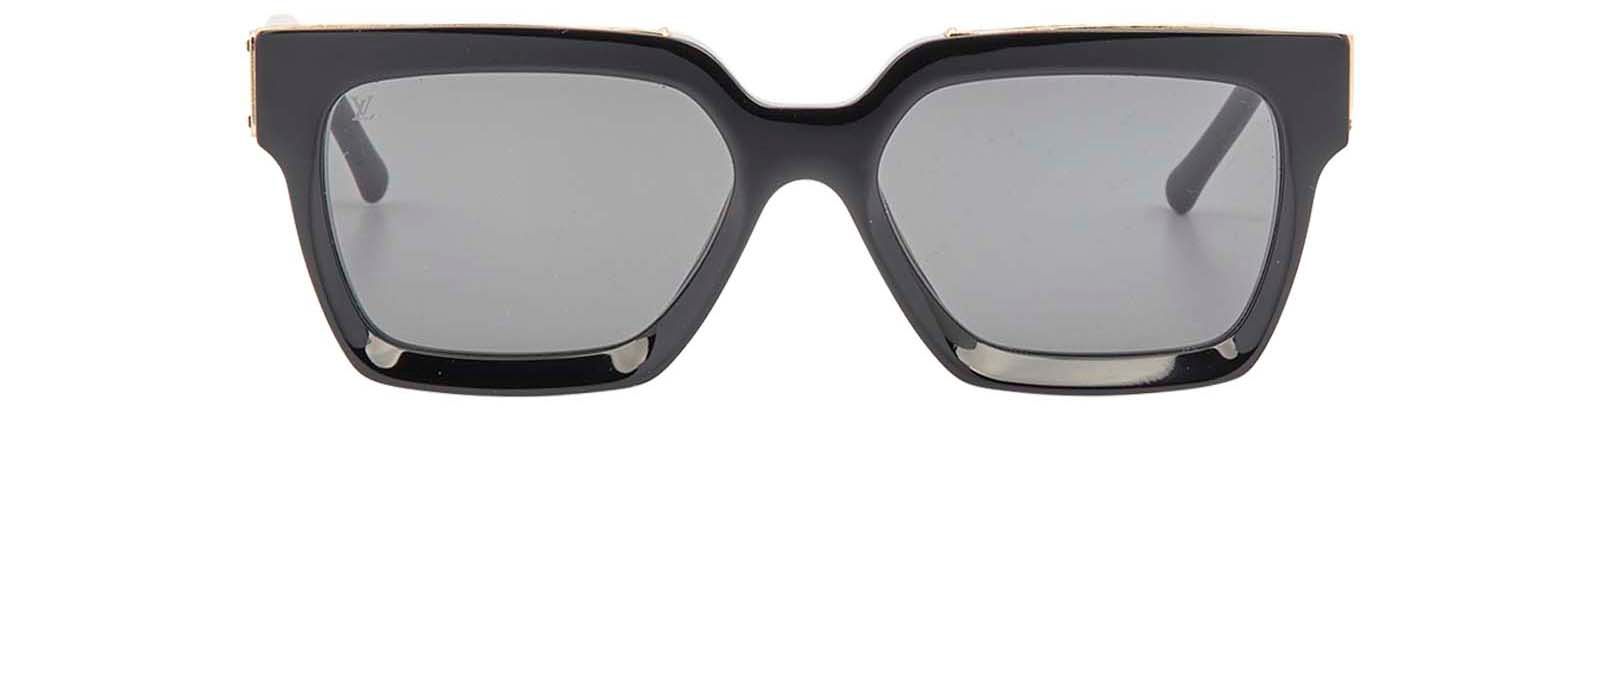 Louis Vuitton Black/Gold Z1165W 1.1 Millionaires Square Sunglasses